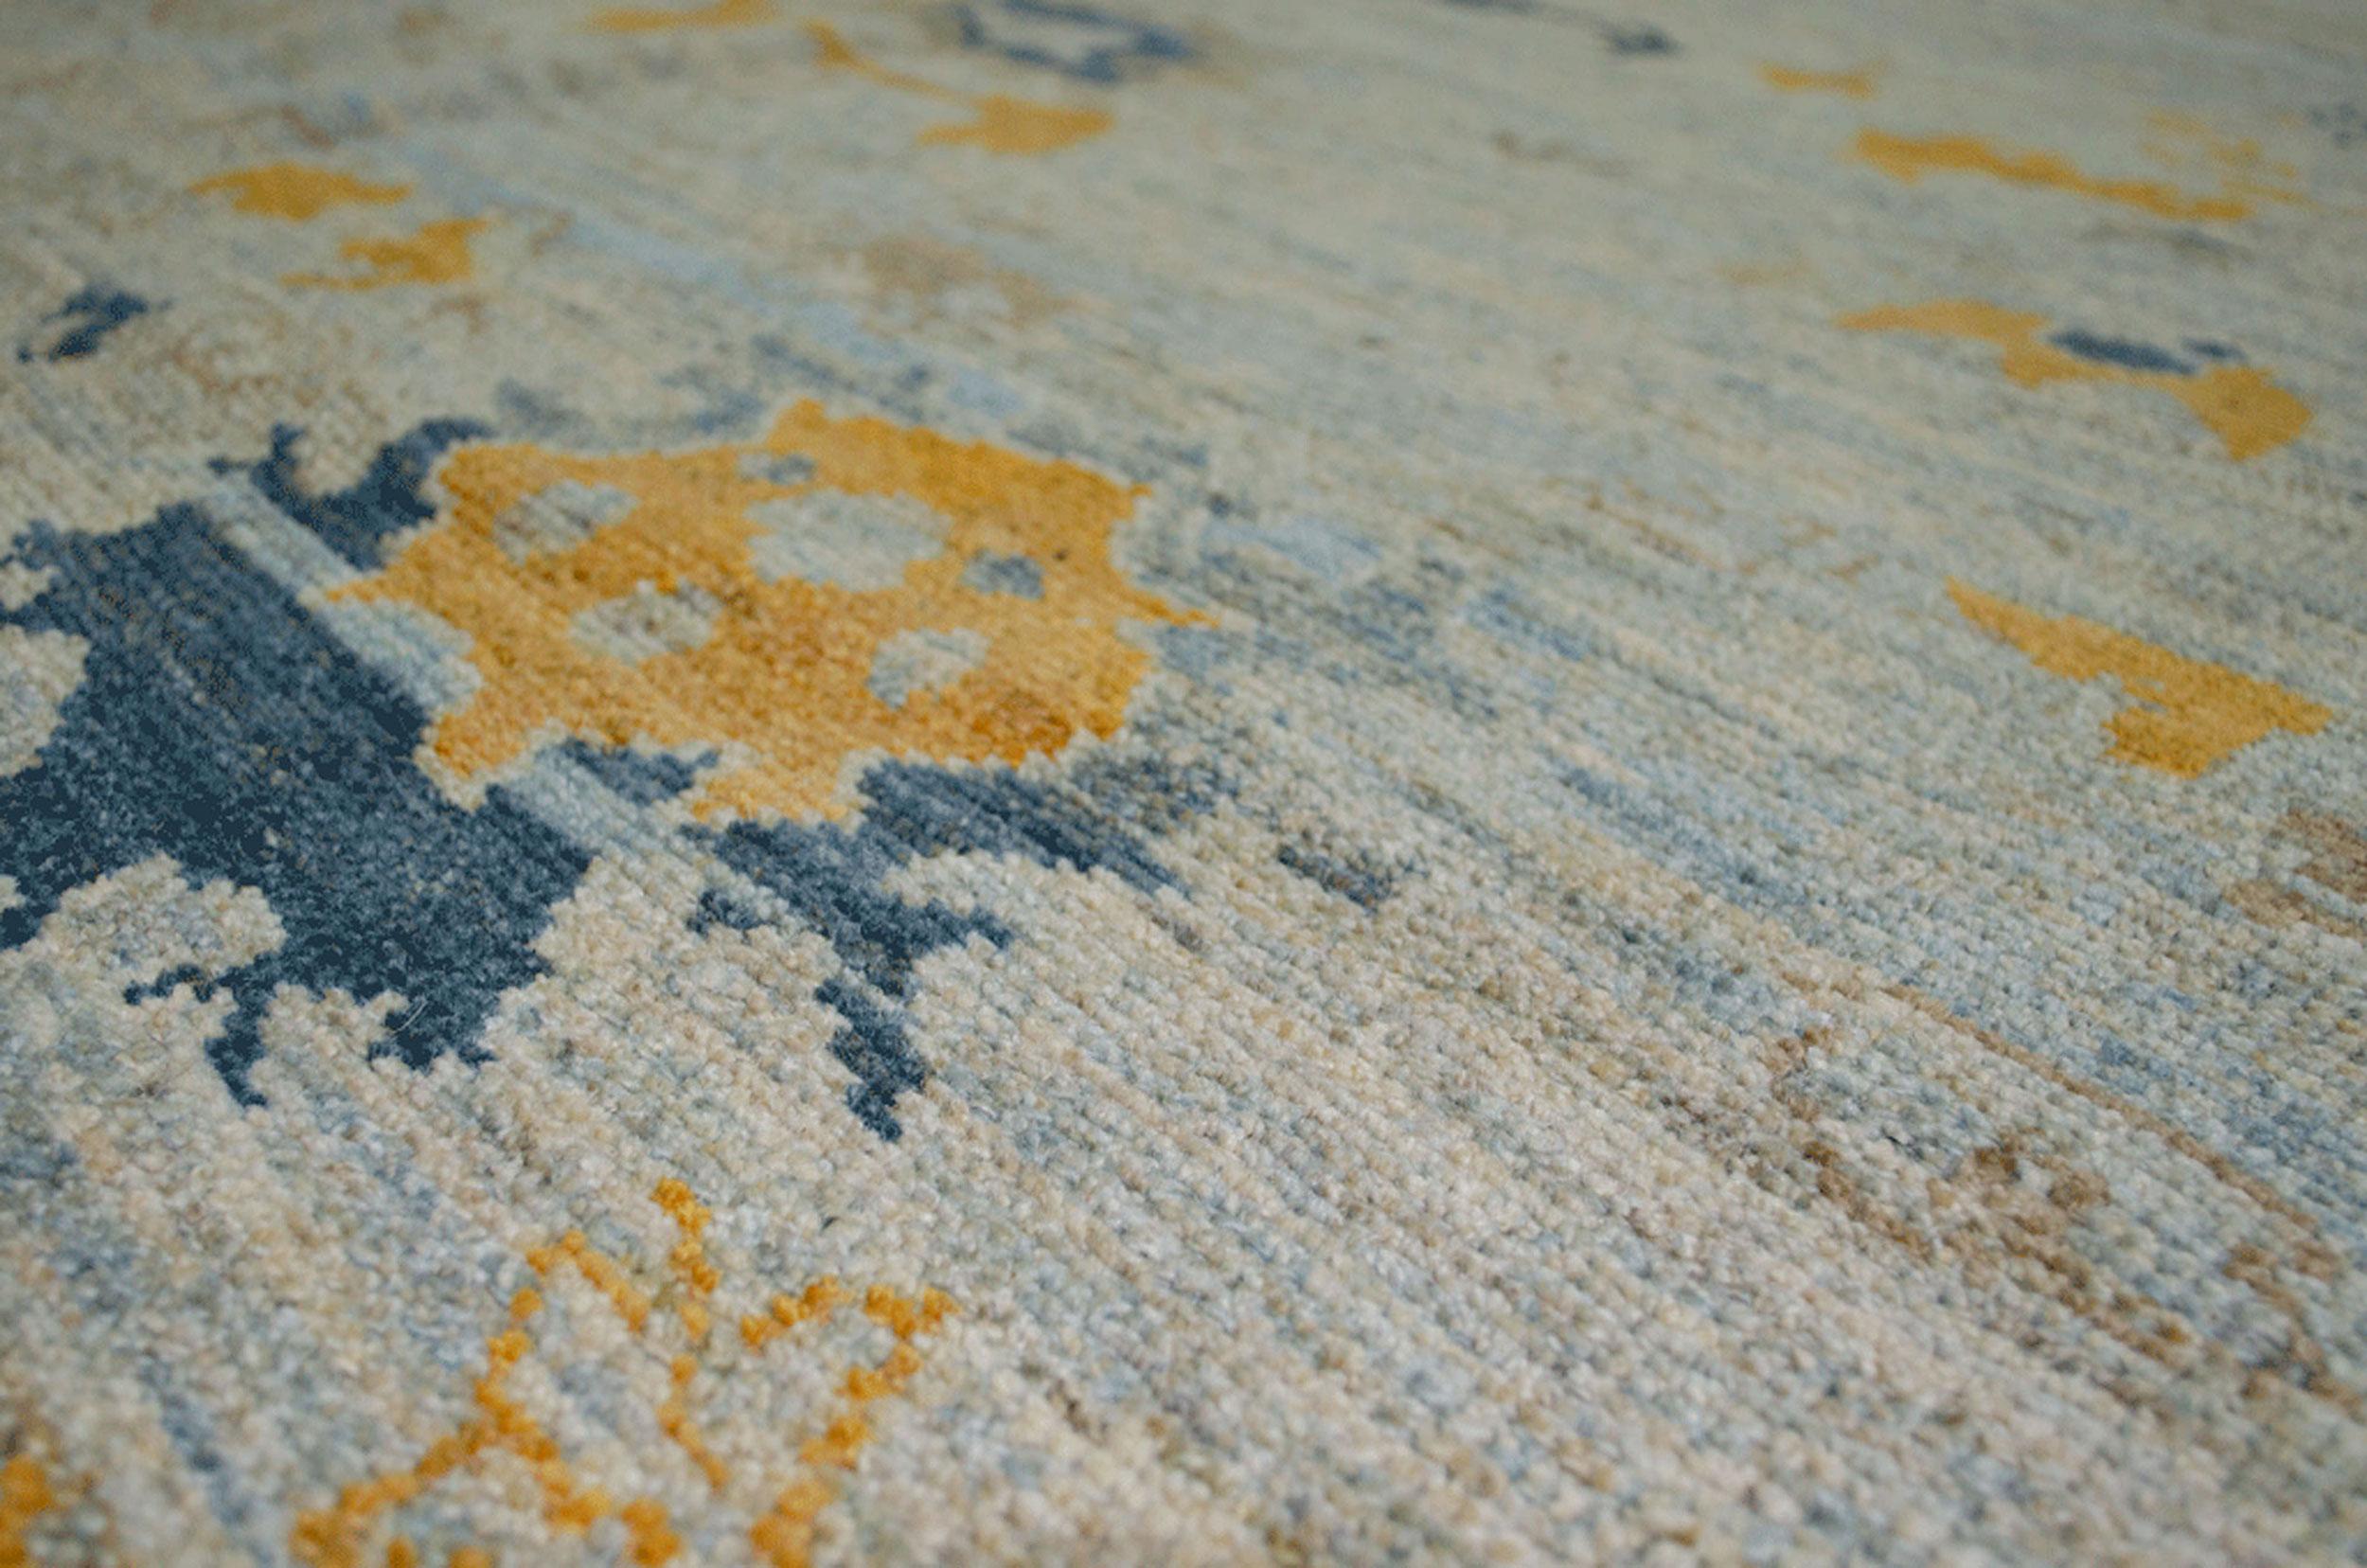 Dekorativer Ushak-Teppich in antiker Ausführung. Dies ist eine neue Produktion mit hochwertiger handgesponnener Wolle und natürlichen Farbstoffen. Die antike Veredelung verleiht dem Teppich den Charakter und die Farben eines antiken Teppichs mit dem